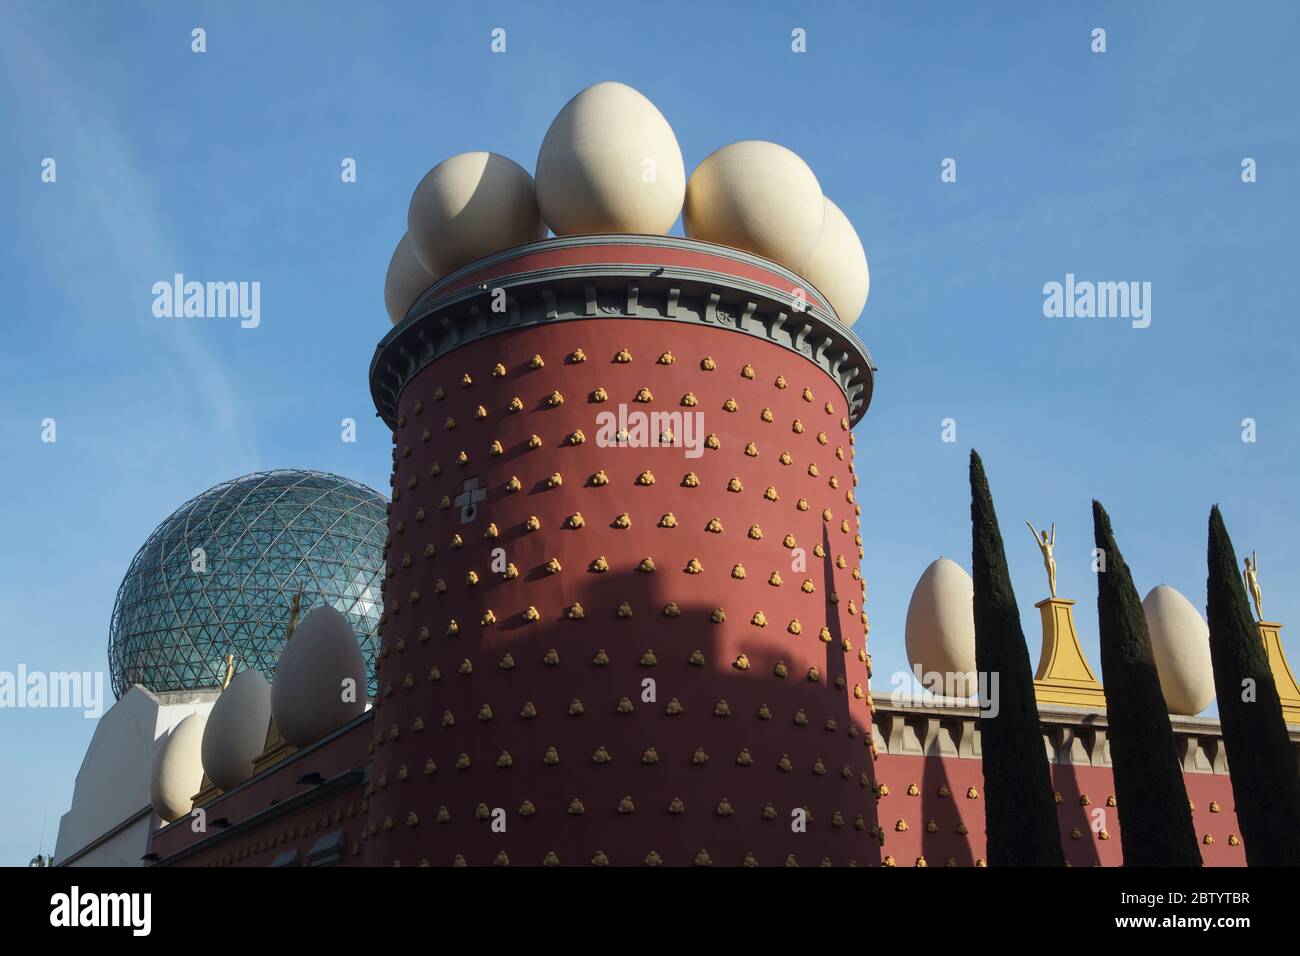 Torre Galatea mit riesigen Eiern, die vom spanischen Surrealisten Salvador Dalí (1984) als Teil des Salvador Dalí Theaters und Museums in Figueres, Katalonien, entworfen wurden. Im Hintergrund ist die geodätische Kuppel über der Haupthalle des Museums zu sehen, die vom spanischen Architekten Emilio Pérez Piñero (1969-1971) entworfen wurde. Stockfoto